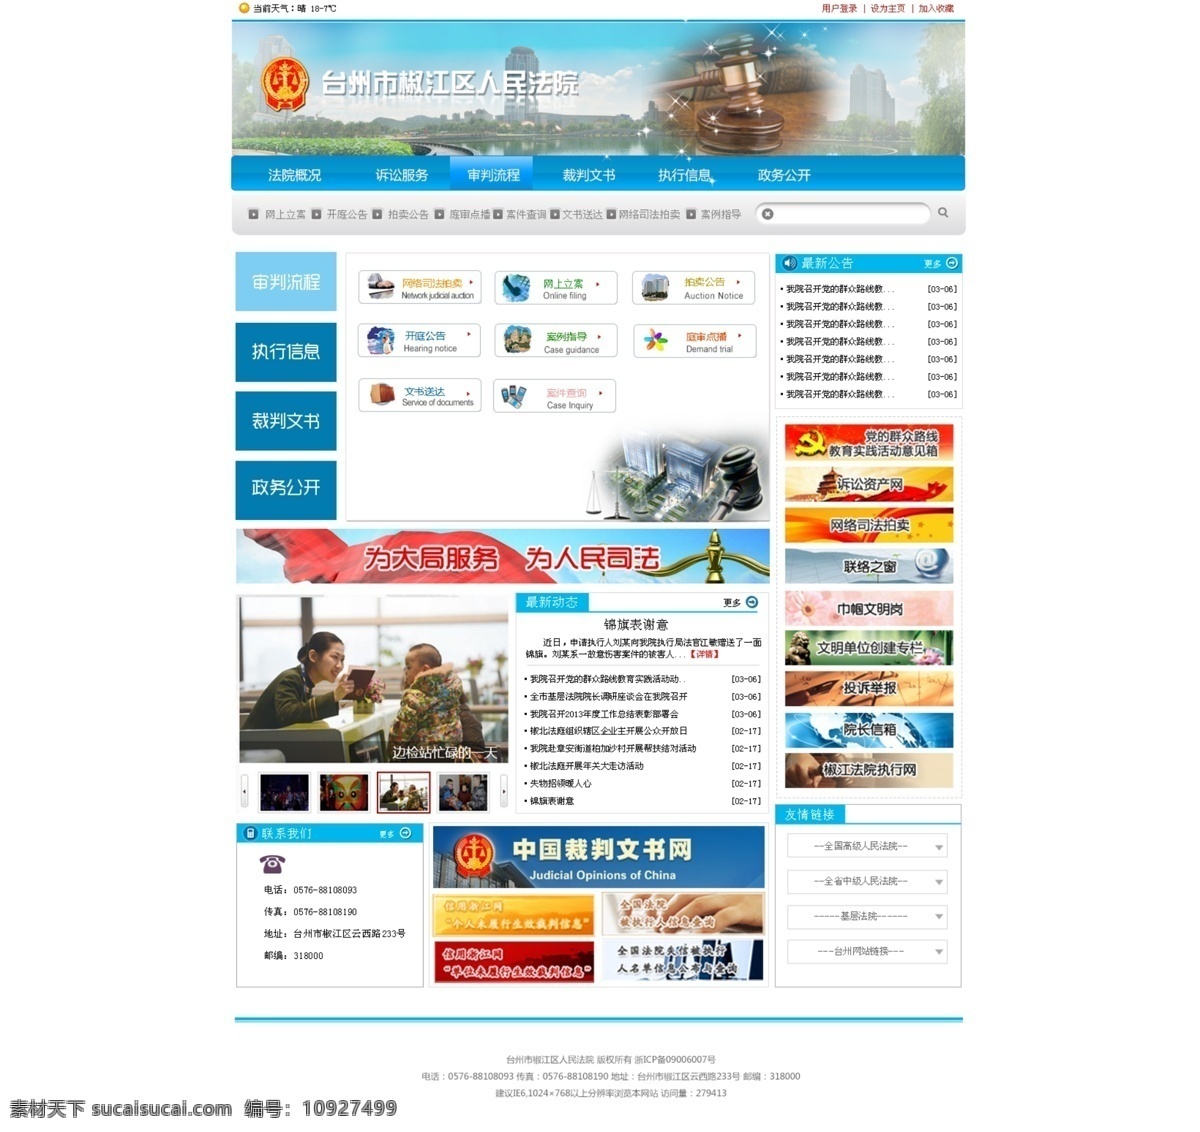 蓝色 网页 网页模板 源文件 政府网站 中文模板 司法 网站 模板下载 网页素材